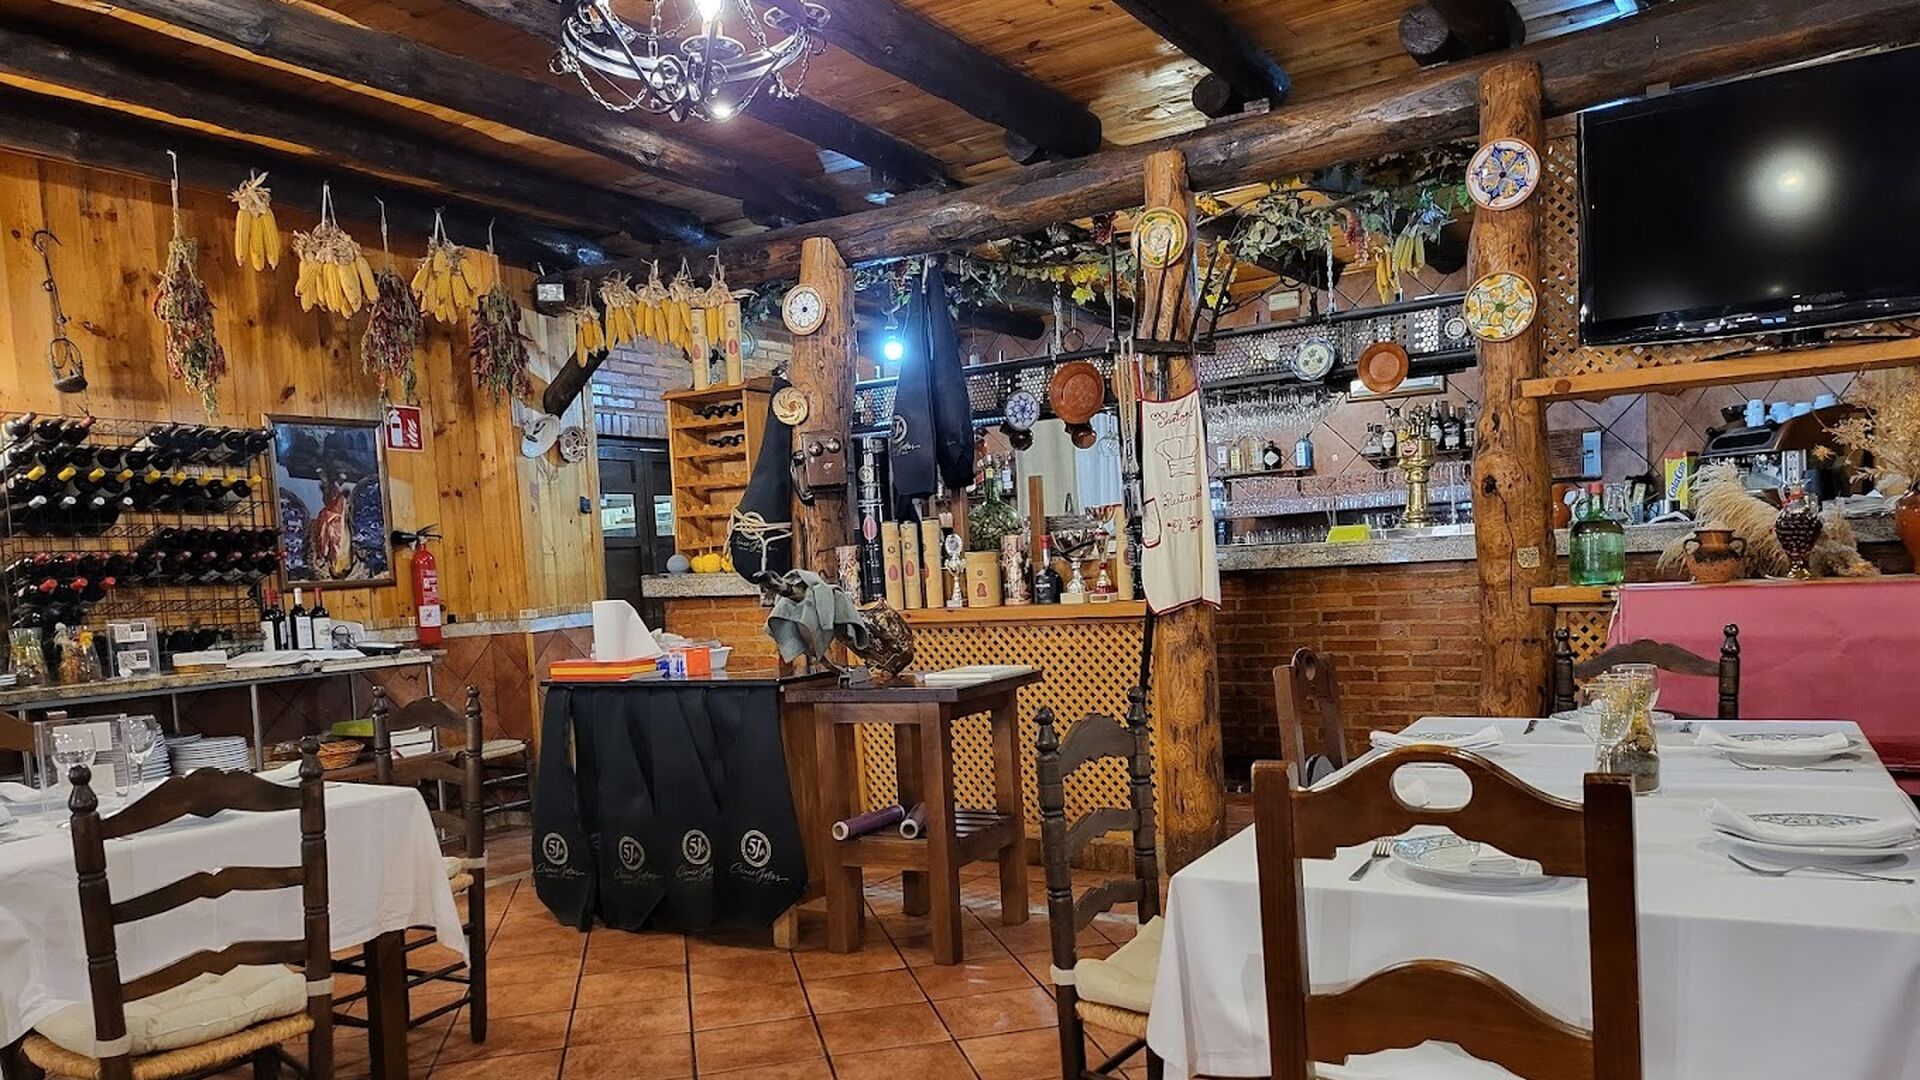 5 restaurantes cerca de Aracena que no debes perderte si vas a la Feria del Jamón